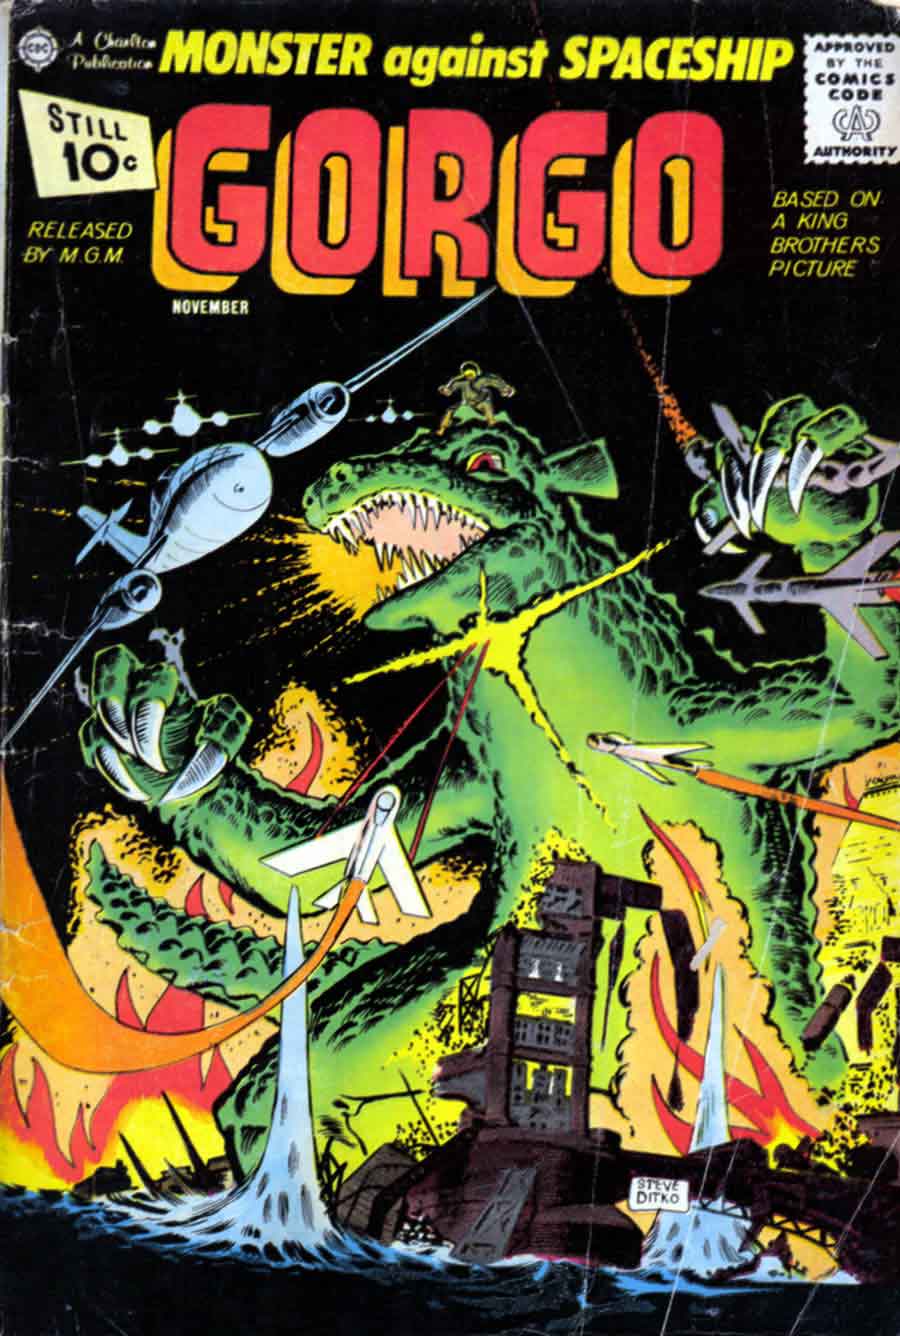 Gorgo v1 #4 charlton monster comic book cover art by Steve Ditko